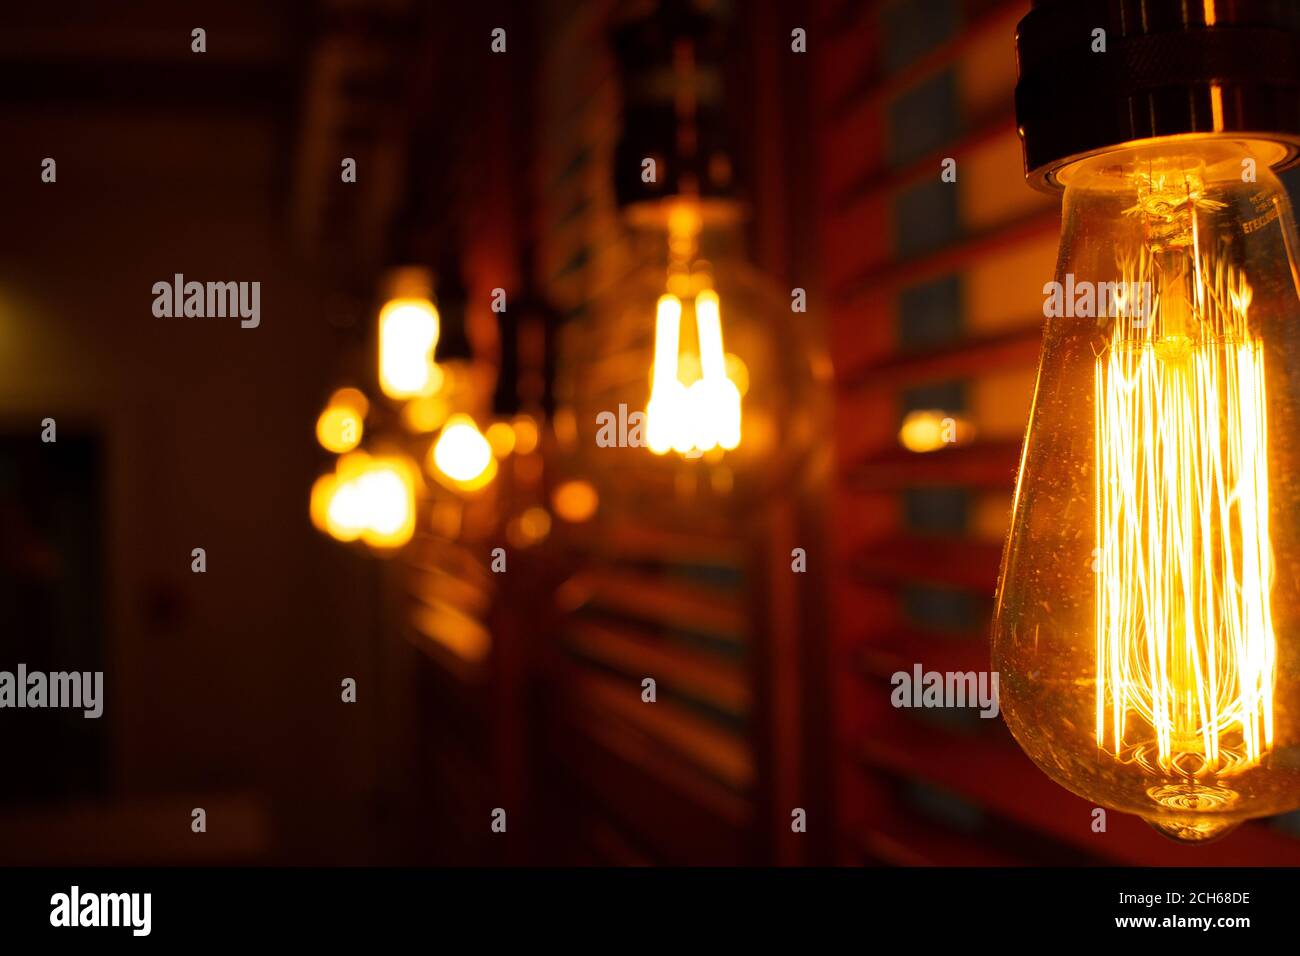 Lámparas antiguas doradas de estilo Edison en la oscuridad. Concepto de decoración de iluminación. Bombillas de época. Fondo difuminado de luces retro Foto de stock